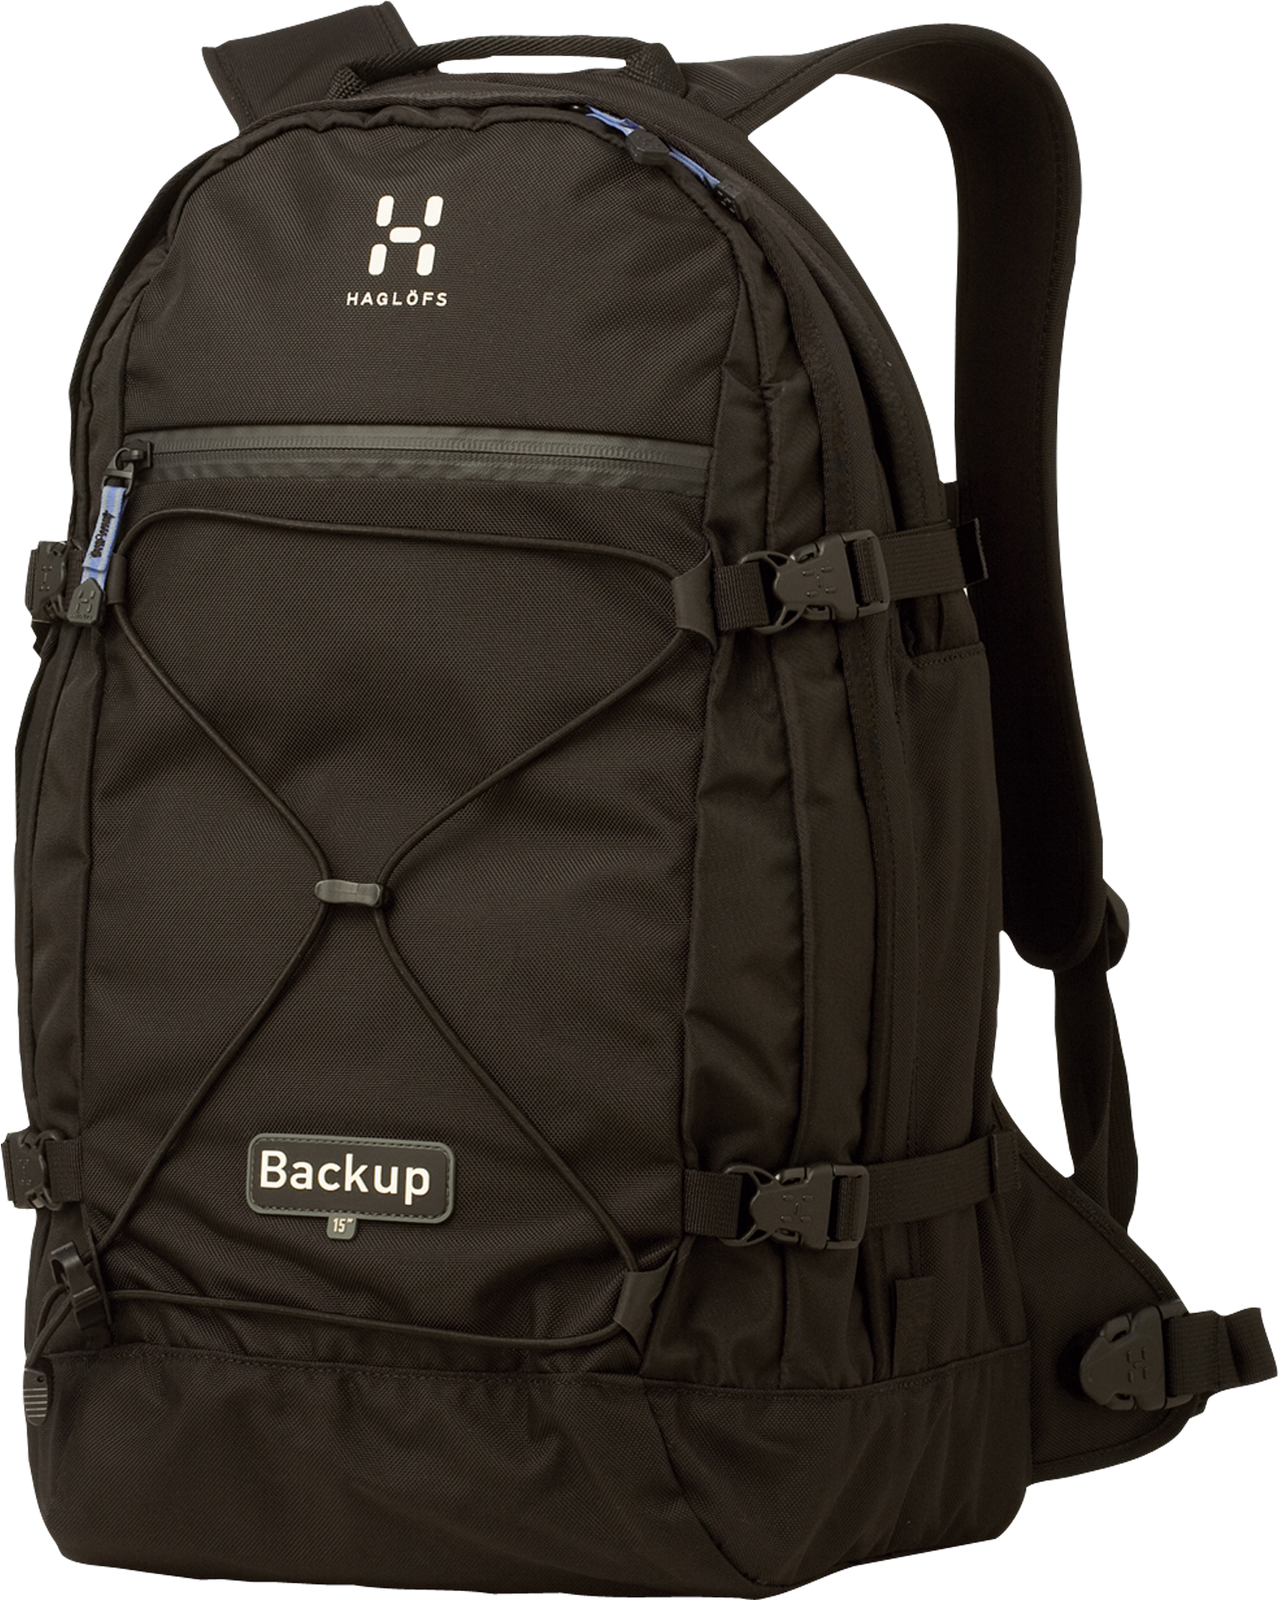 Backpack Sports Black Waterproof HD Image Free PNG Image